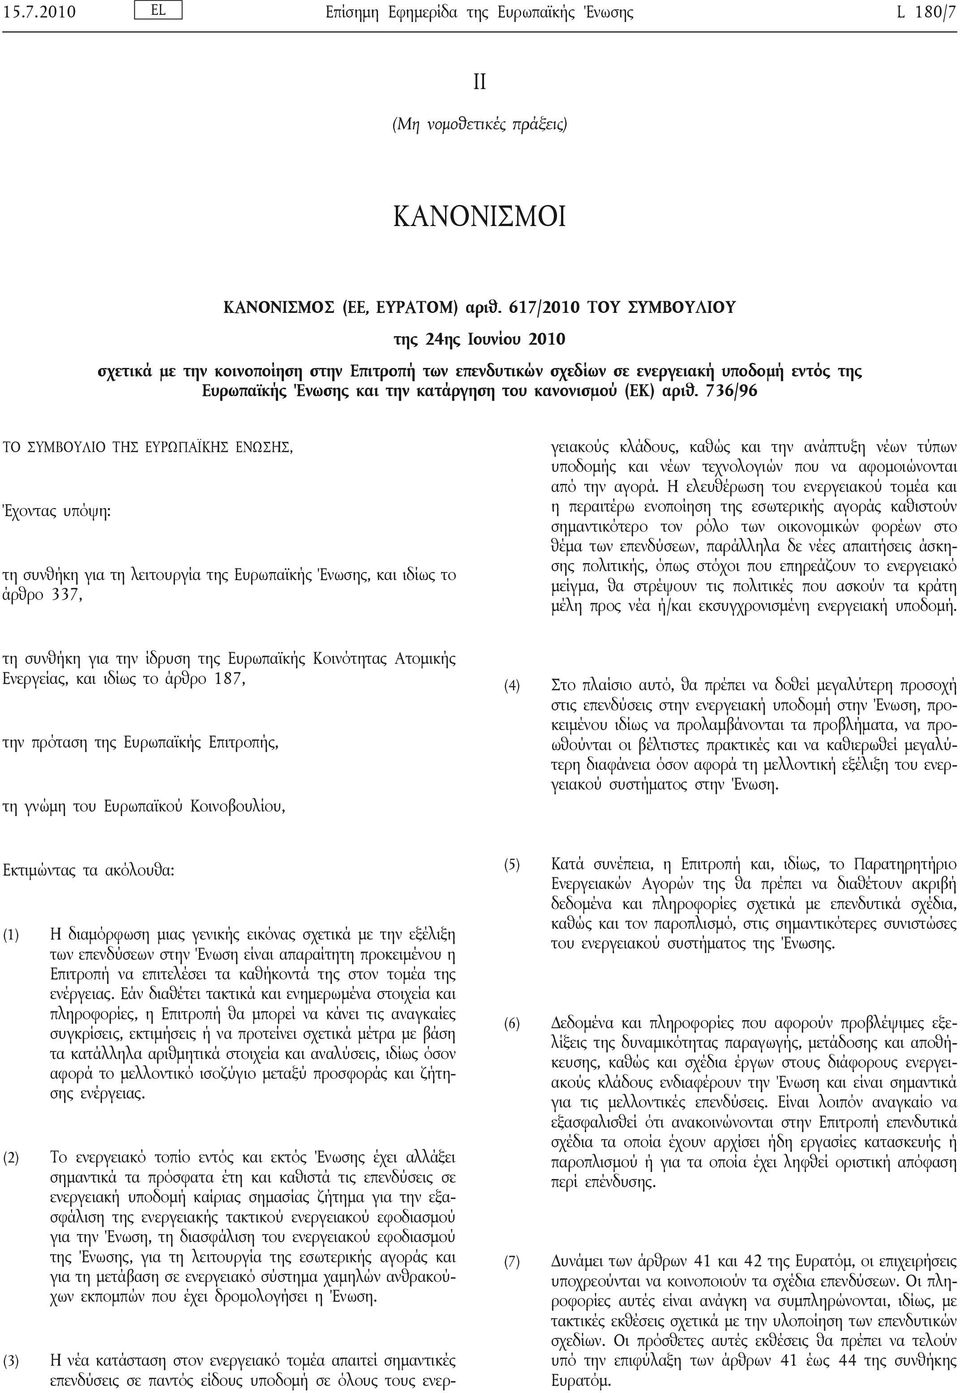 αριθ. 736/96 ΤΟ ΣΥΜΒΟΥΛΙΟ ΤΗΣ ΕΥΡΩΠΑΪΚΗΣ ΕΝΩΣΗΣ, Έχοντας υπόψη: τη συνθήκη για τη λειτουργία της Ευρωπαϊκής Ένωσης, και ιδίως το άρθρο 337, γειακούς κλάδους, καθώς και την ανάπτυξη νέων τύπων